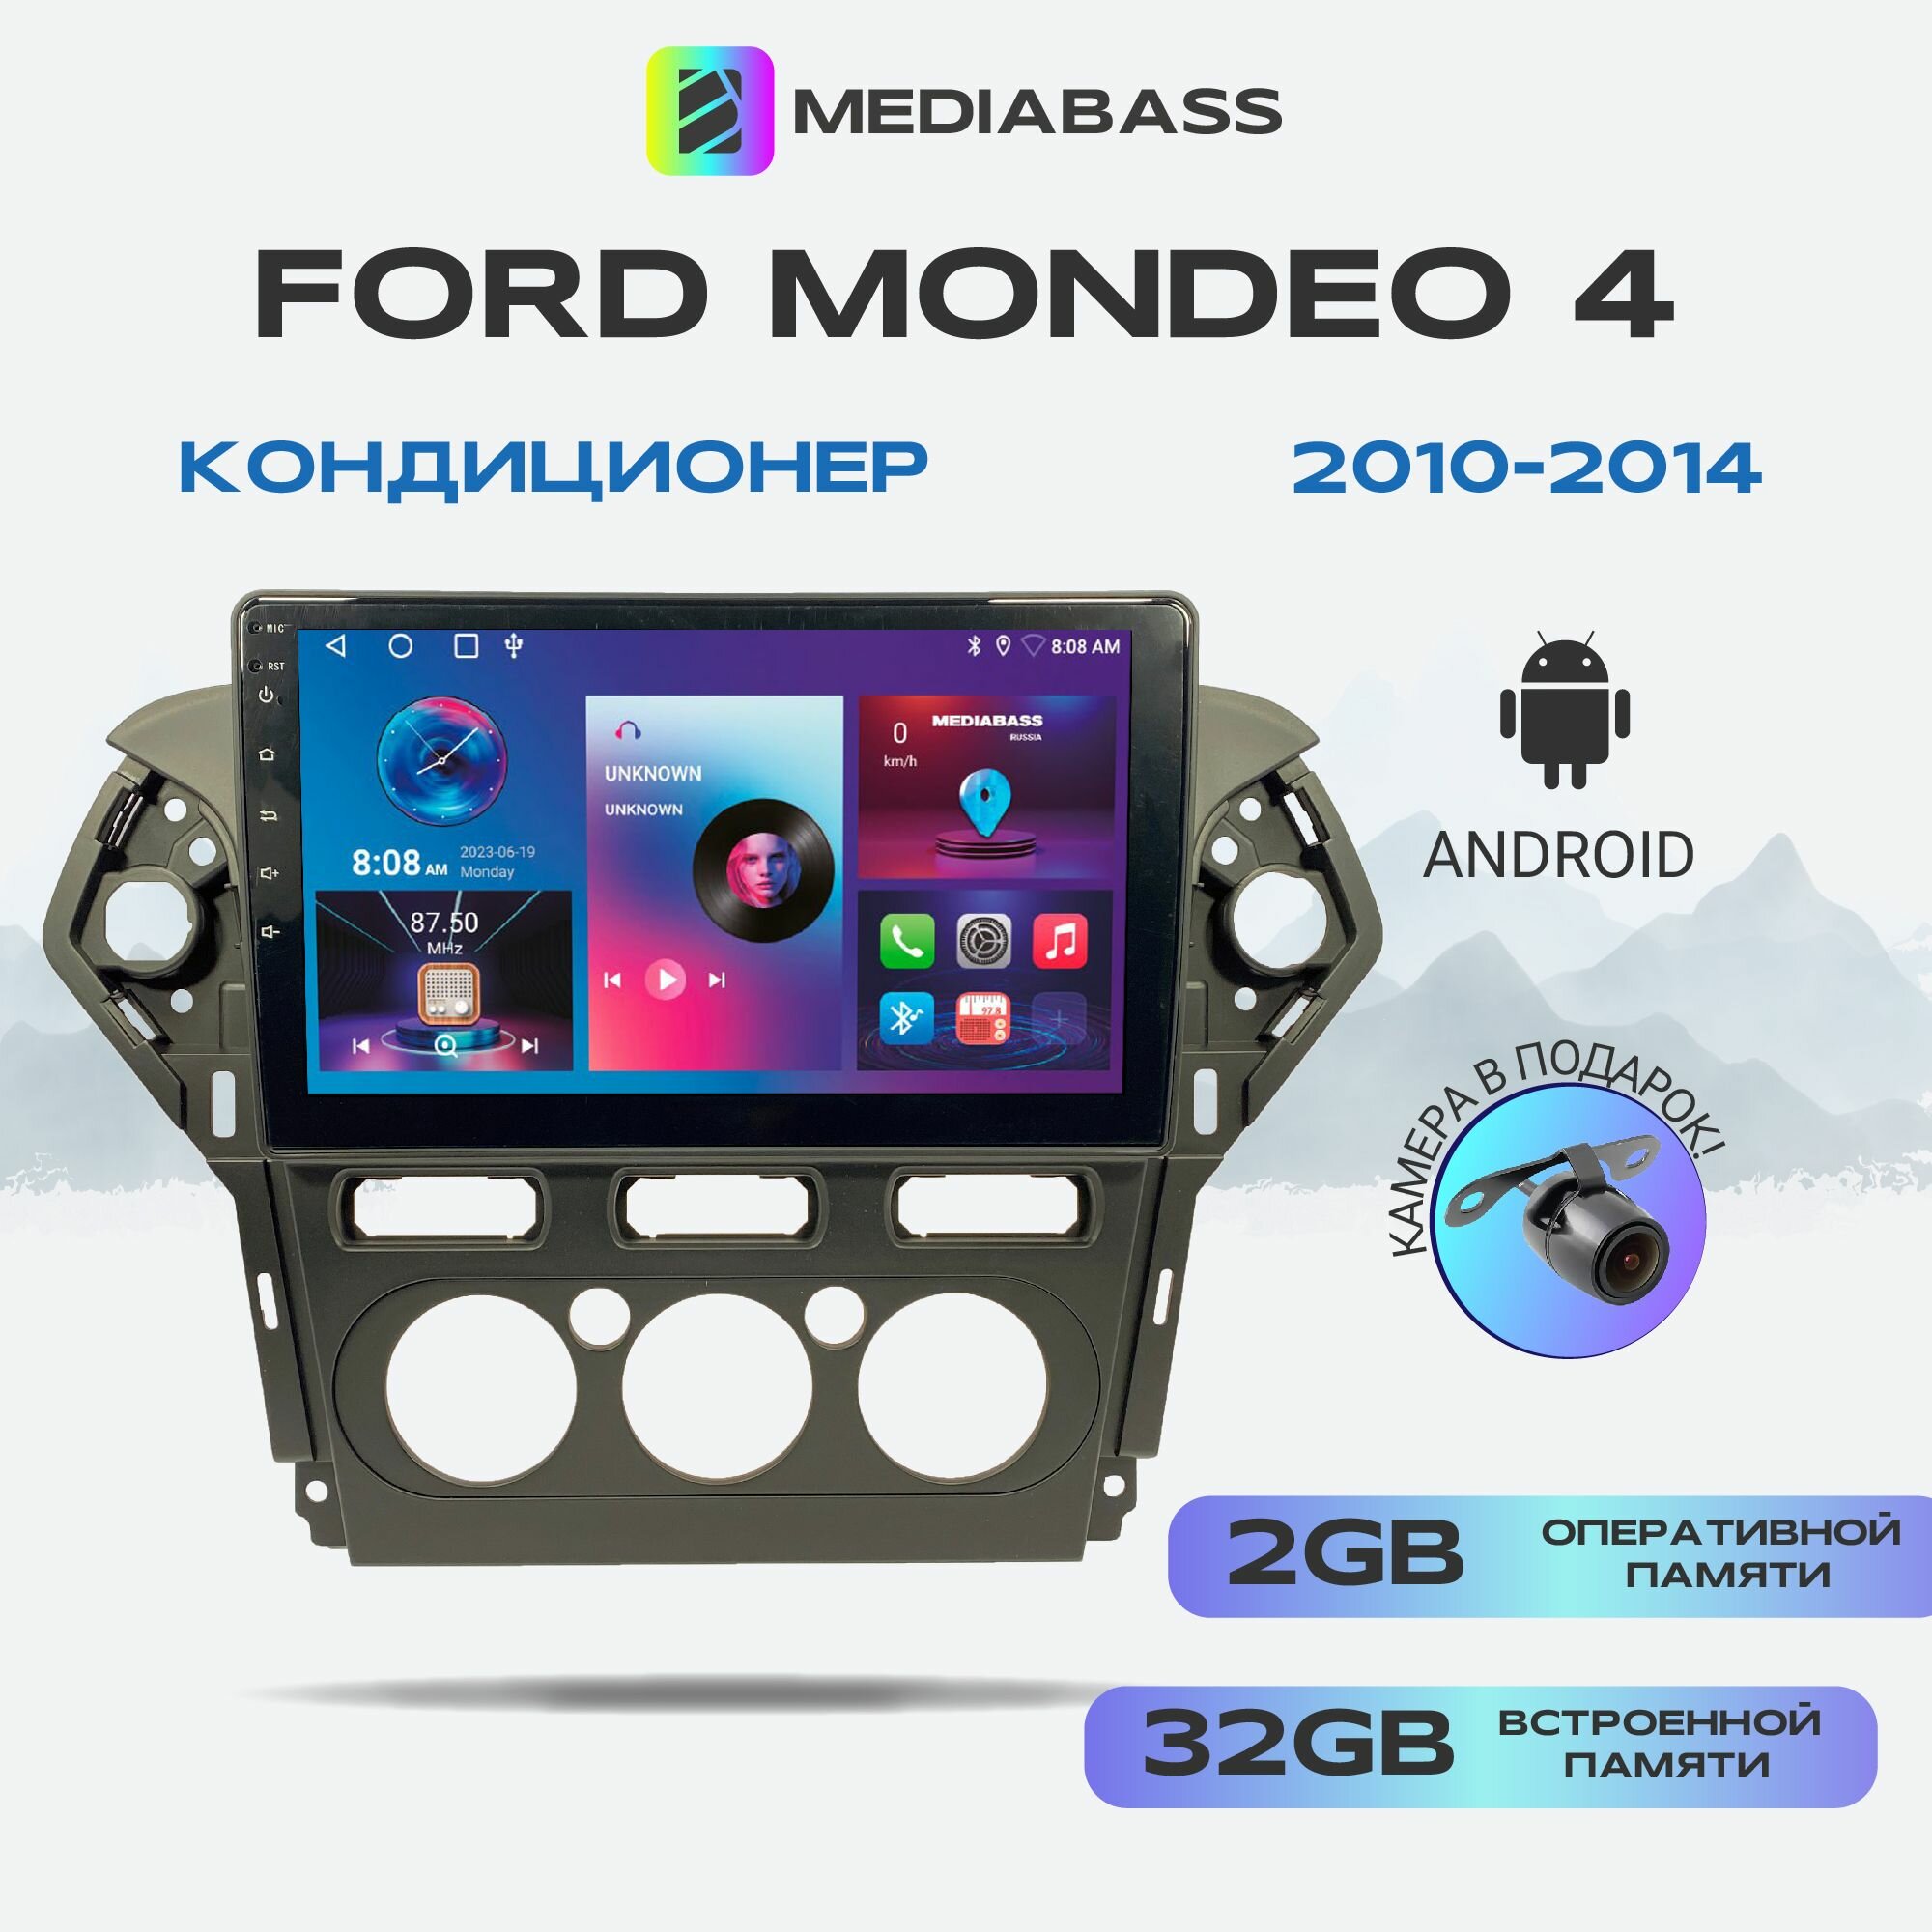 Автомагнитола Mediabass Ford Mondeo 4 2010-2014 Кондиционер, Android 12, 2/32ГБ, 4-ядерный процессор, QLED экран с разрешением 1280*720, чип-усилитель YD7388 / Форд Мондео 4